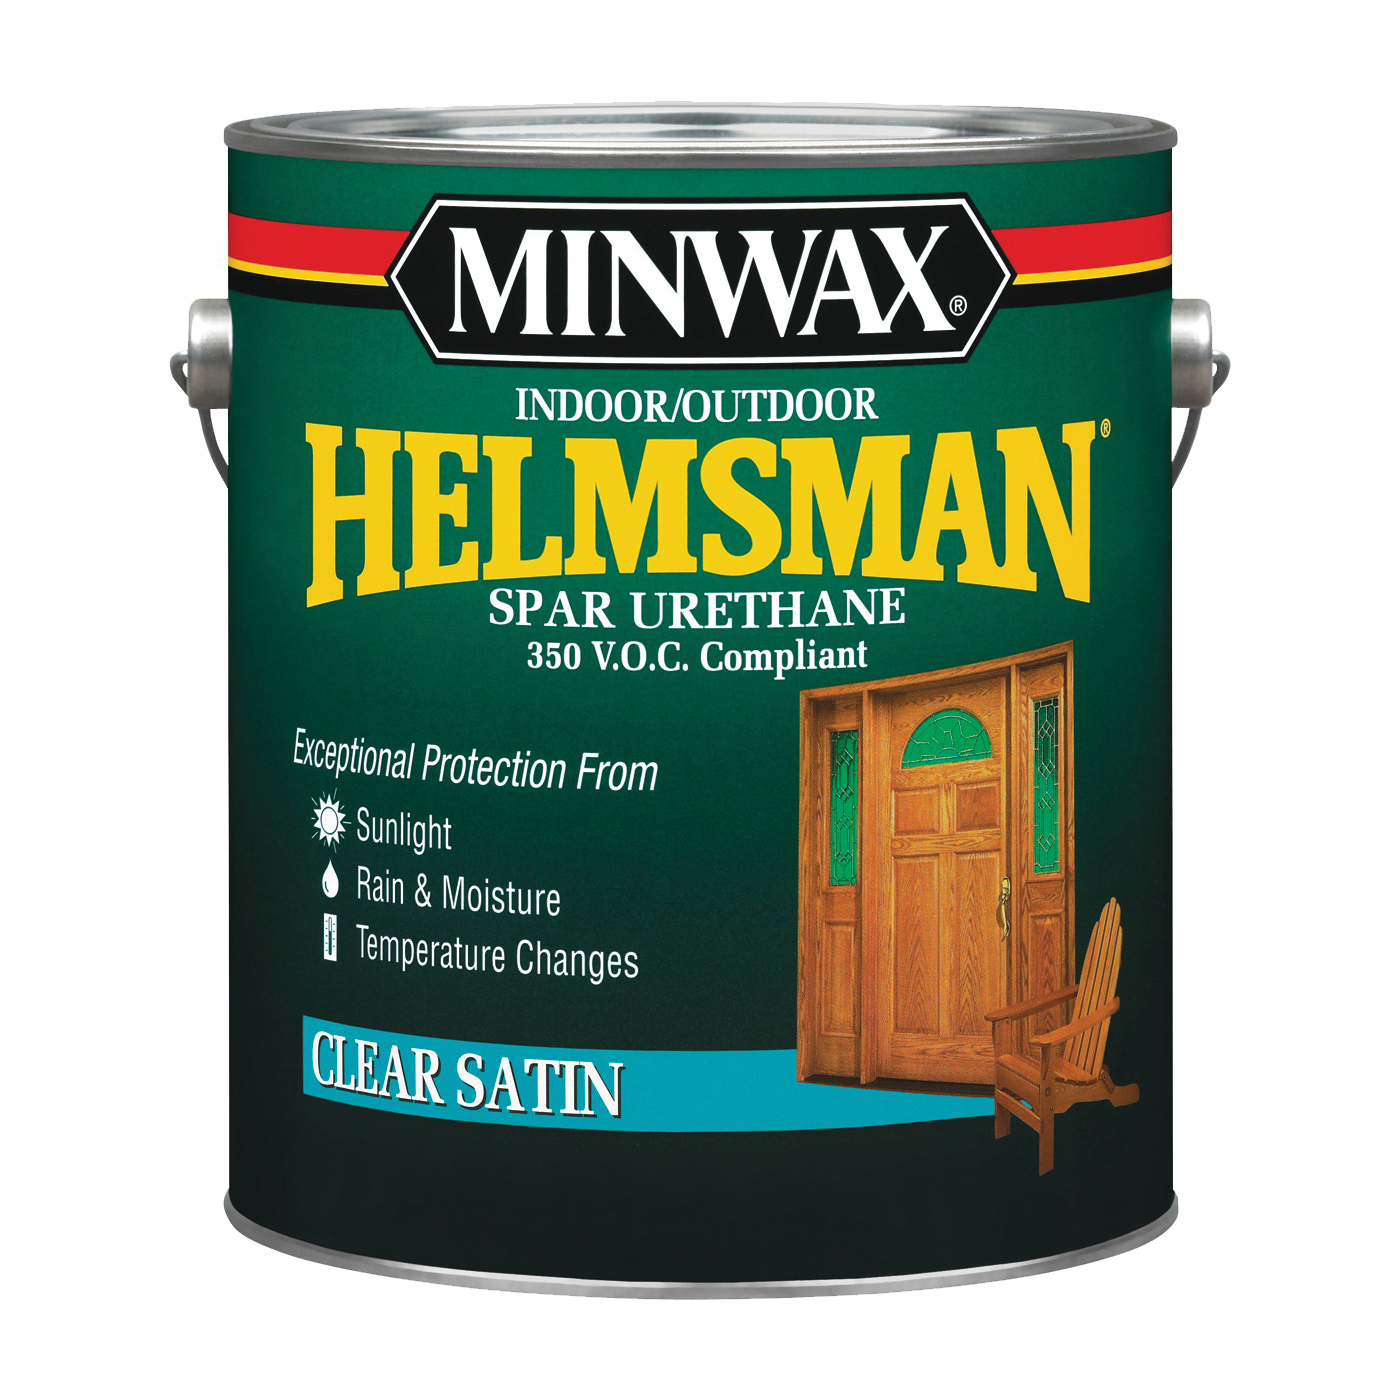 Helmsman 13205000 Spar Urethane Paint, Satin, Liquid, 1 gal, Pail